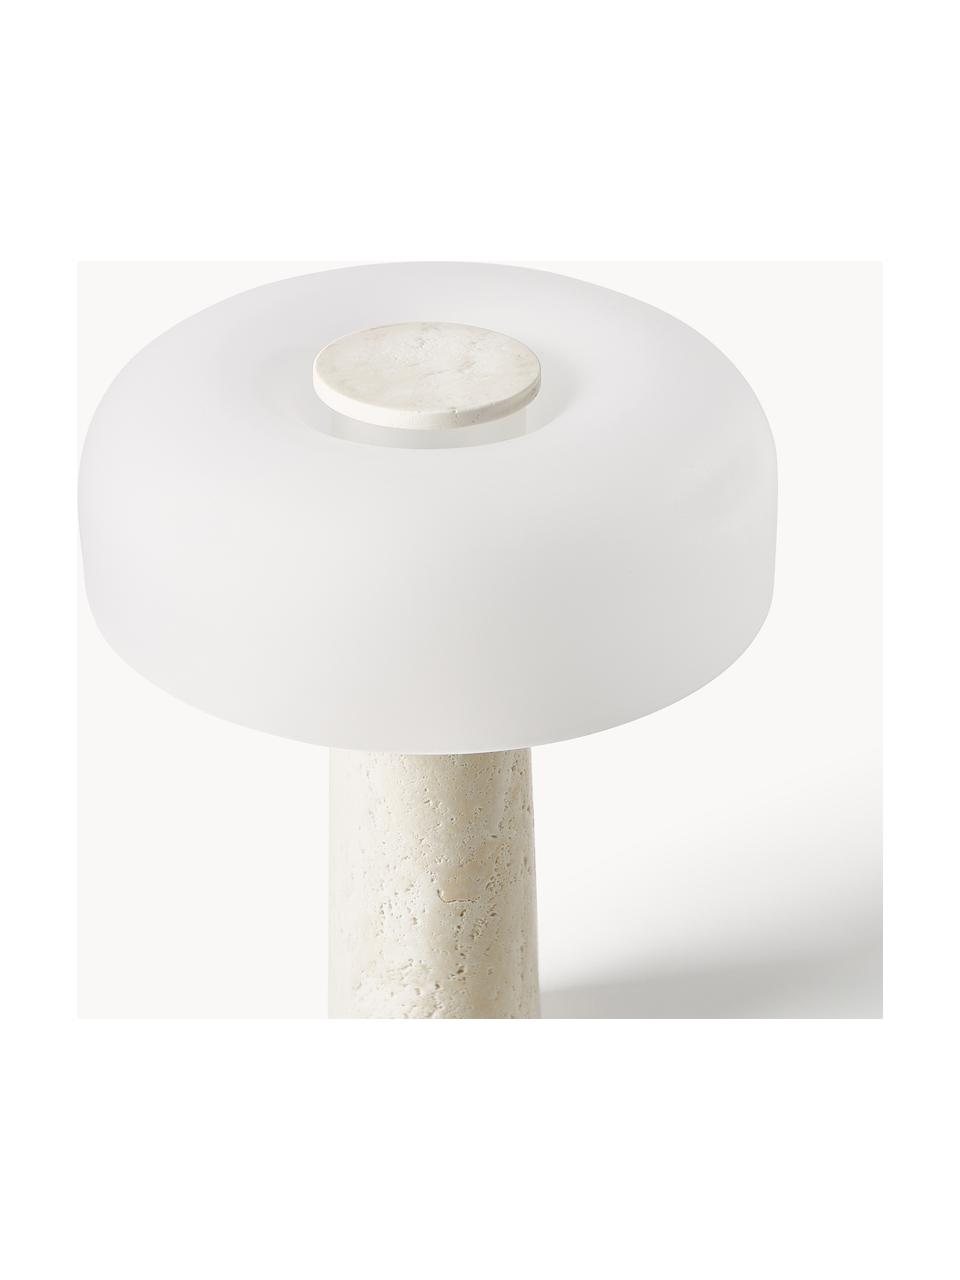 Tafellamp Carla met travertijnen voet, Lampvoet: metaal, Lampenkap: glas, Wit, beige, travertijn, B 32 x H 39 cm